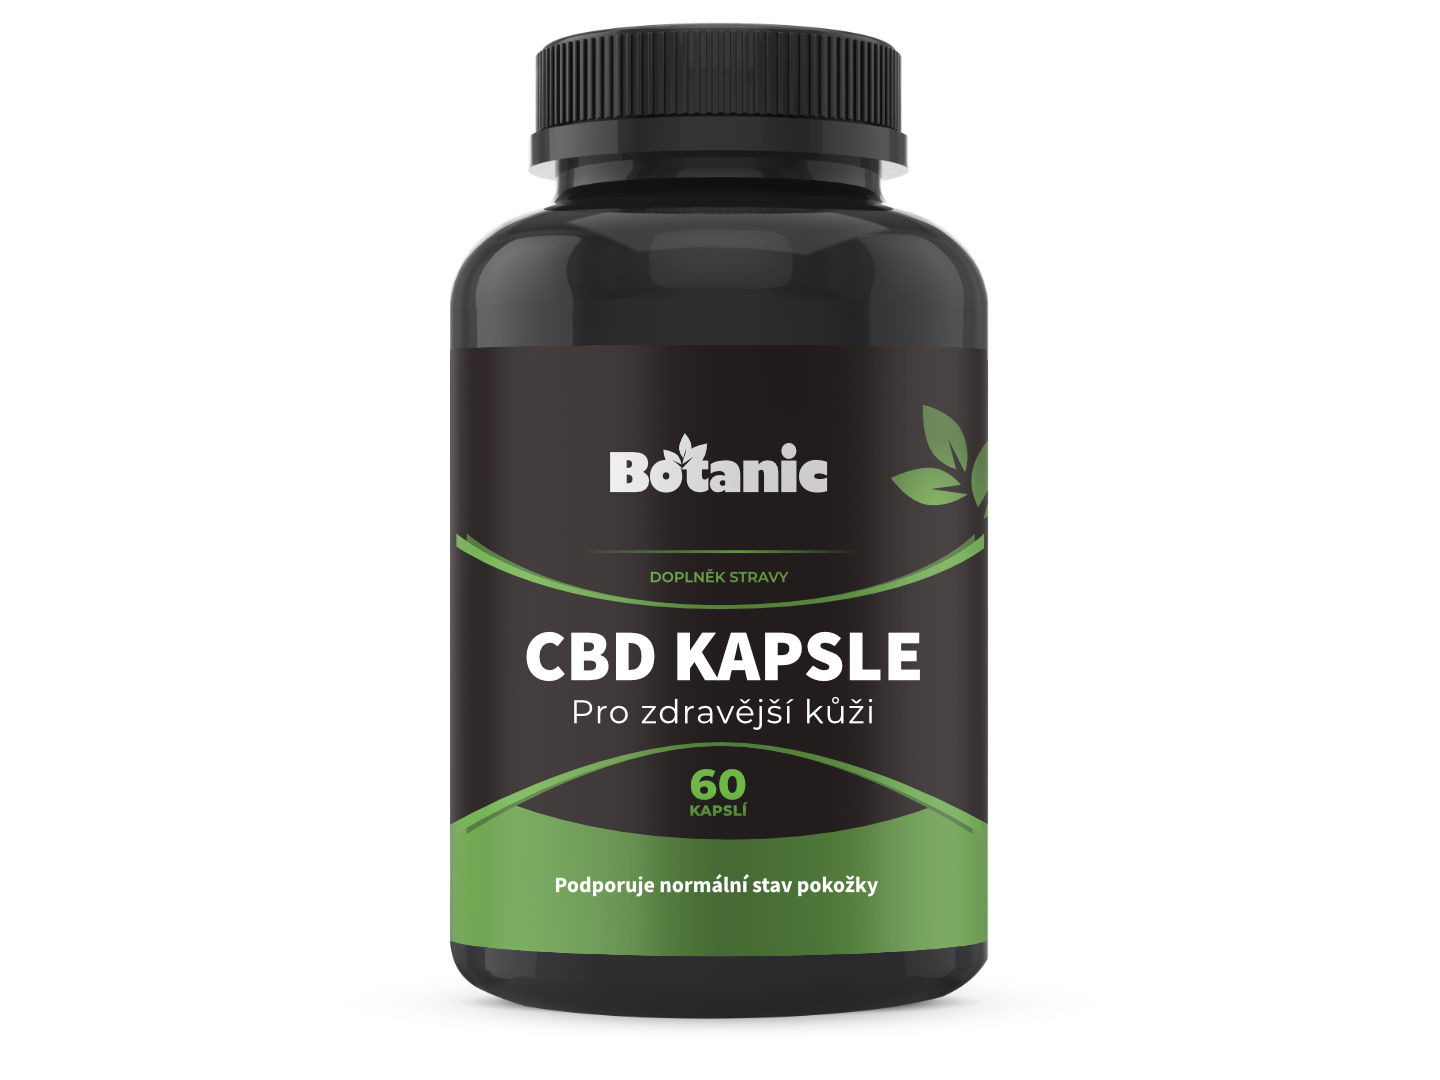 Botanic CBD Kapsle - Pro zdravější kůži 60kap.